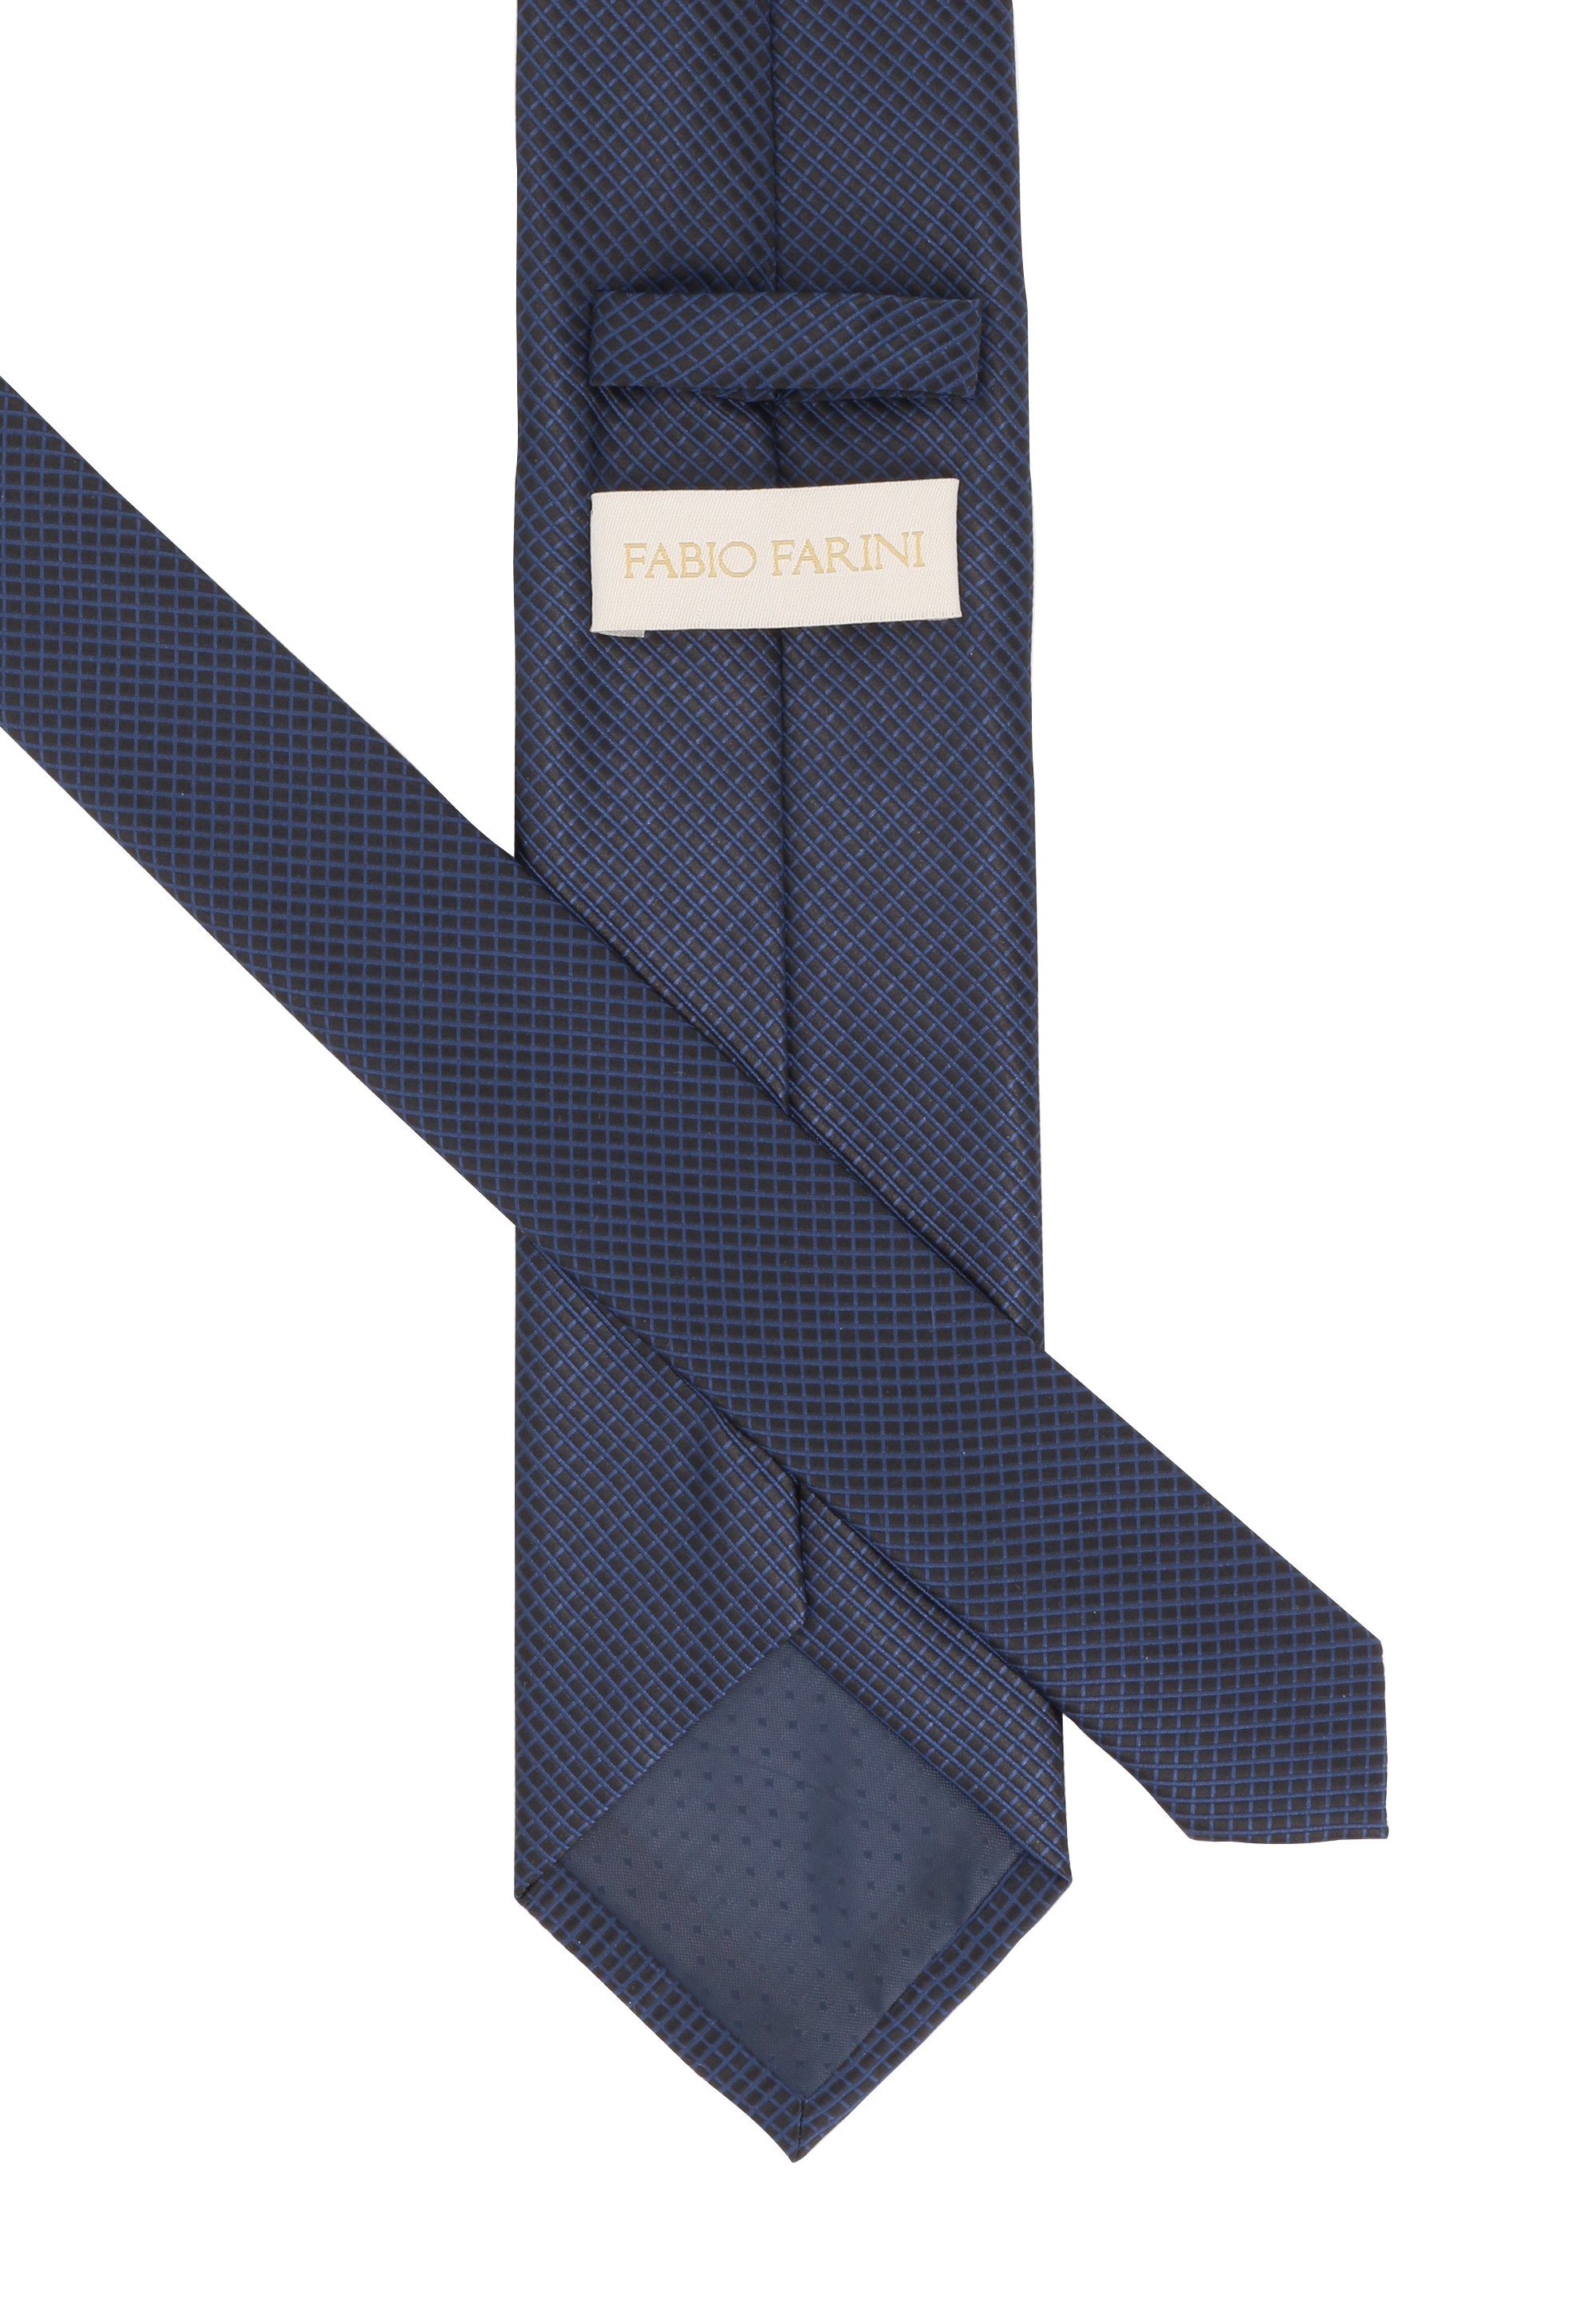 Fabio Farini Krawatte karierte Breite (ohne in Kariert) Schlips oder Krawatte Herren - 8cm 6cm (8cm), Schwarz/Dunkelblau Box, Breit